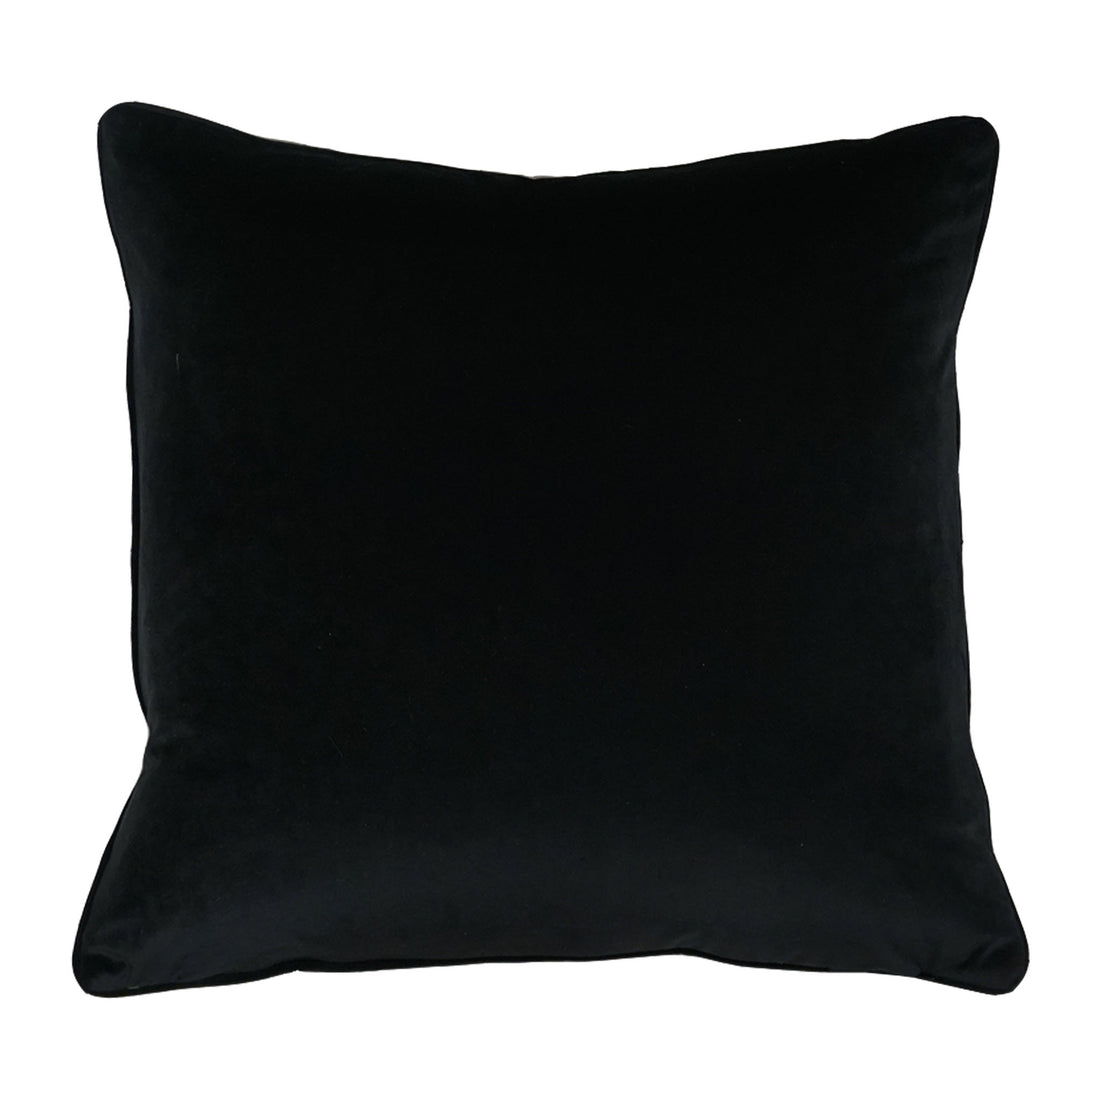 Ikat Cut Velvet Throw Pillow Cover | Multi | 20" x 20"